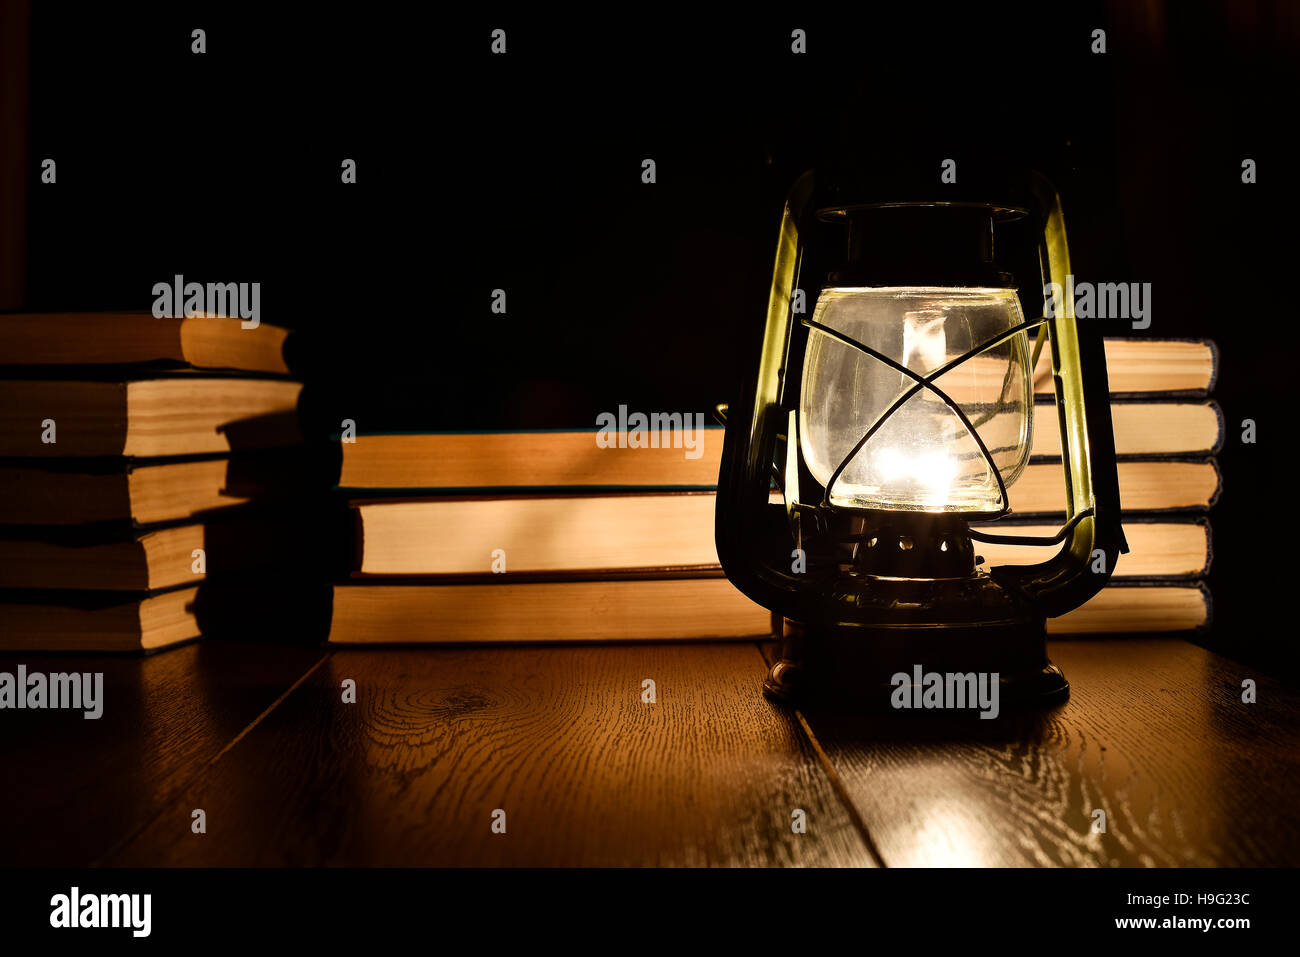 La luz de una lámpara de keroseno y libros sobre la mesa Foto de stock